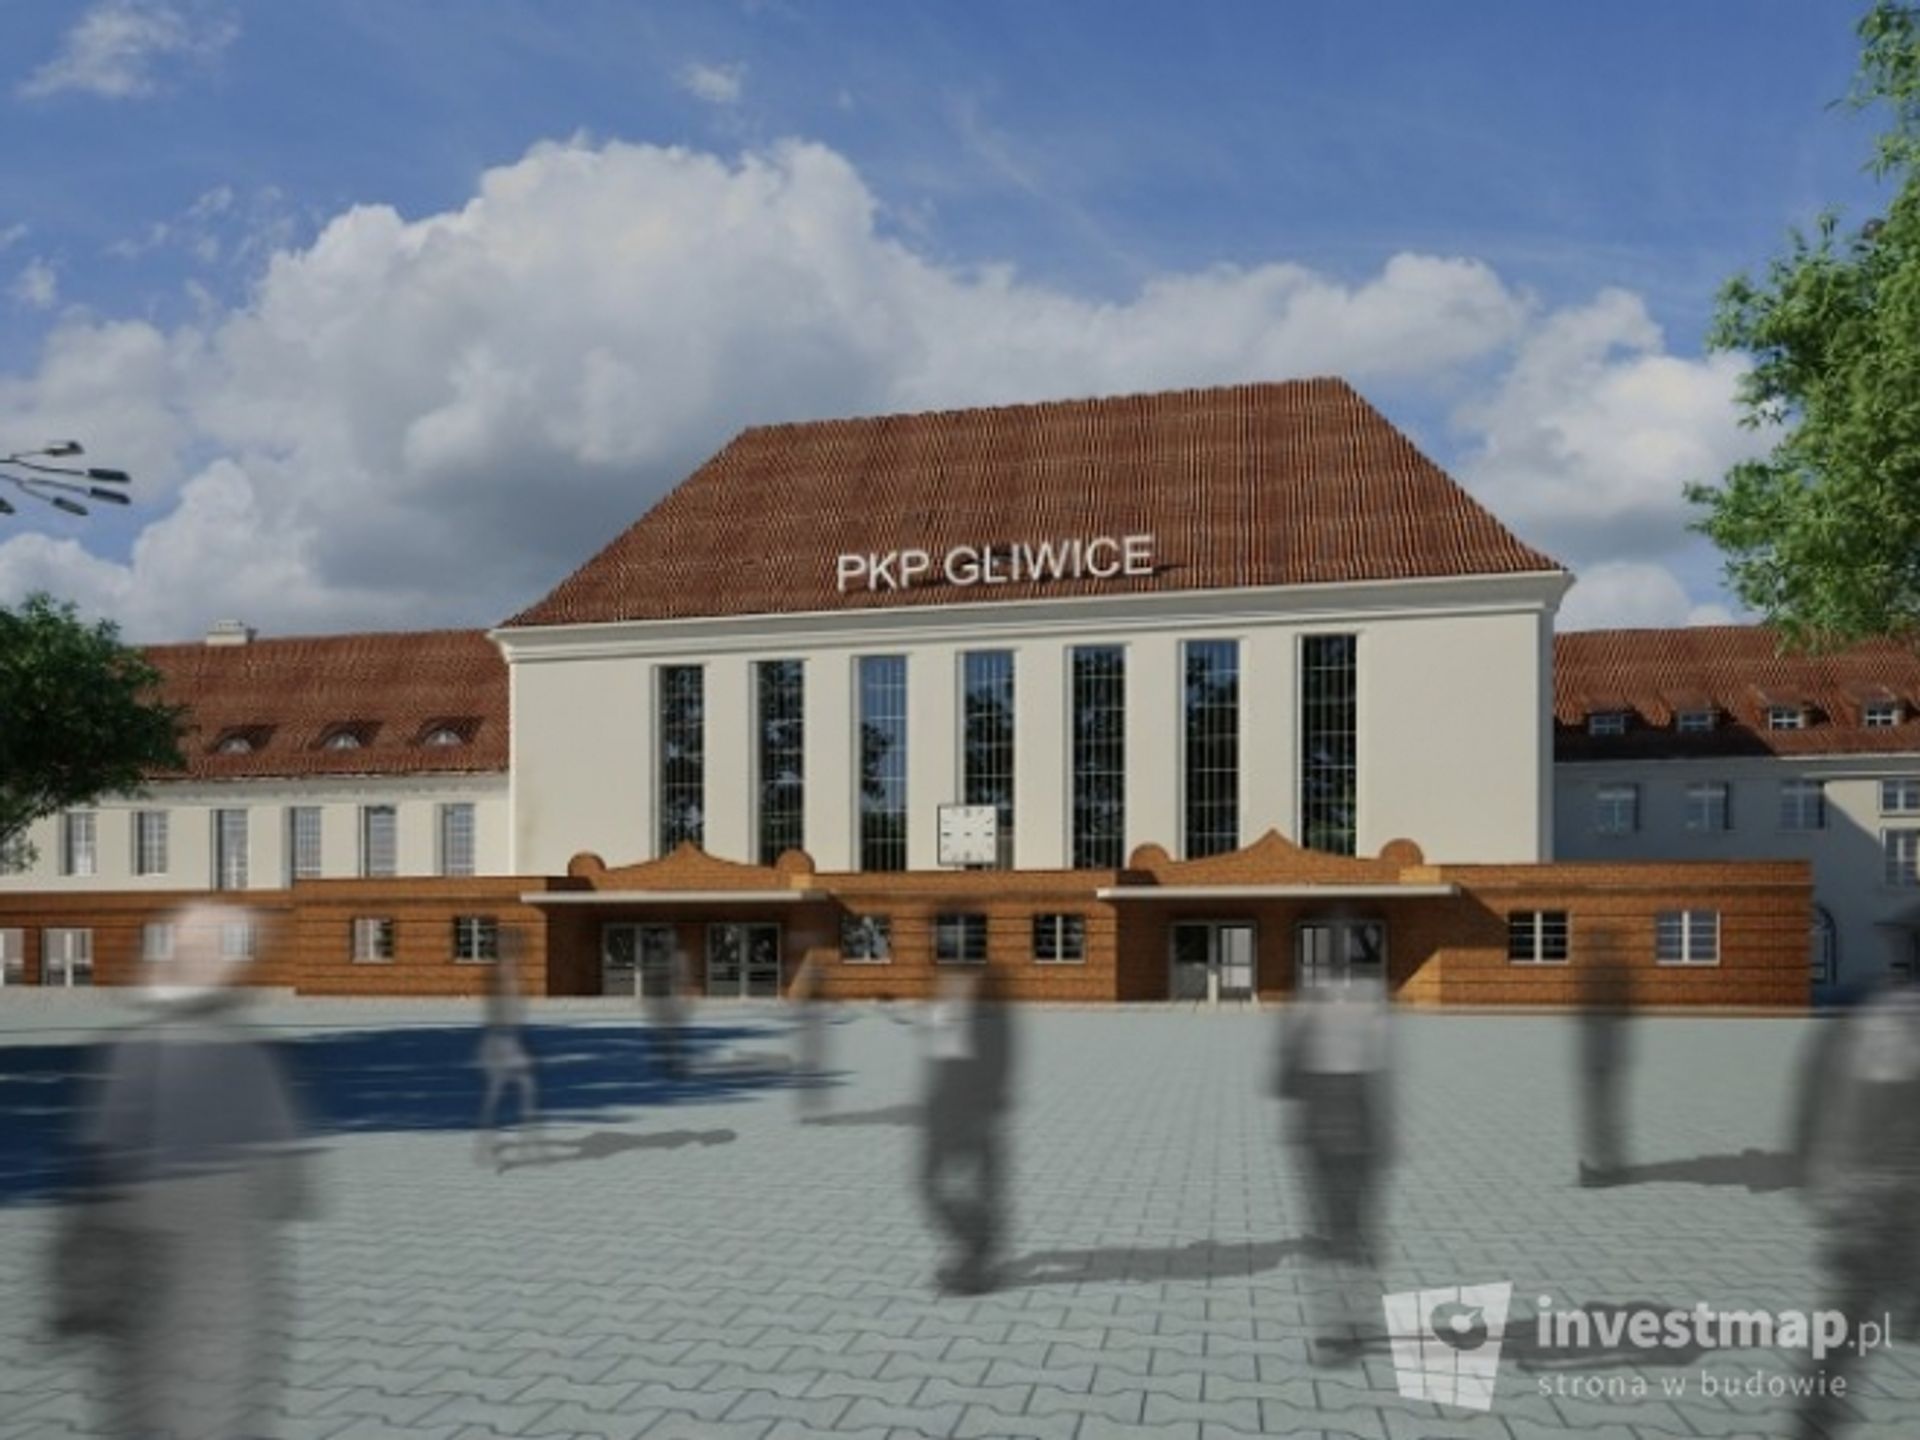  Dworzec w Gliwicach – przesunięcie terminu zakończenia inwestycji